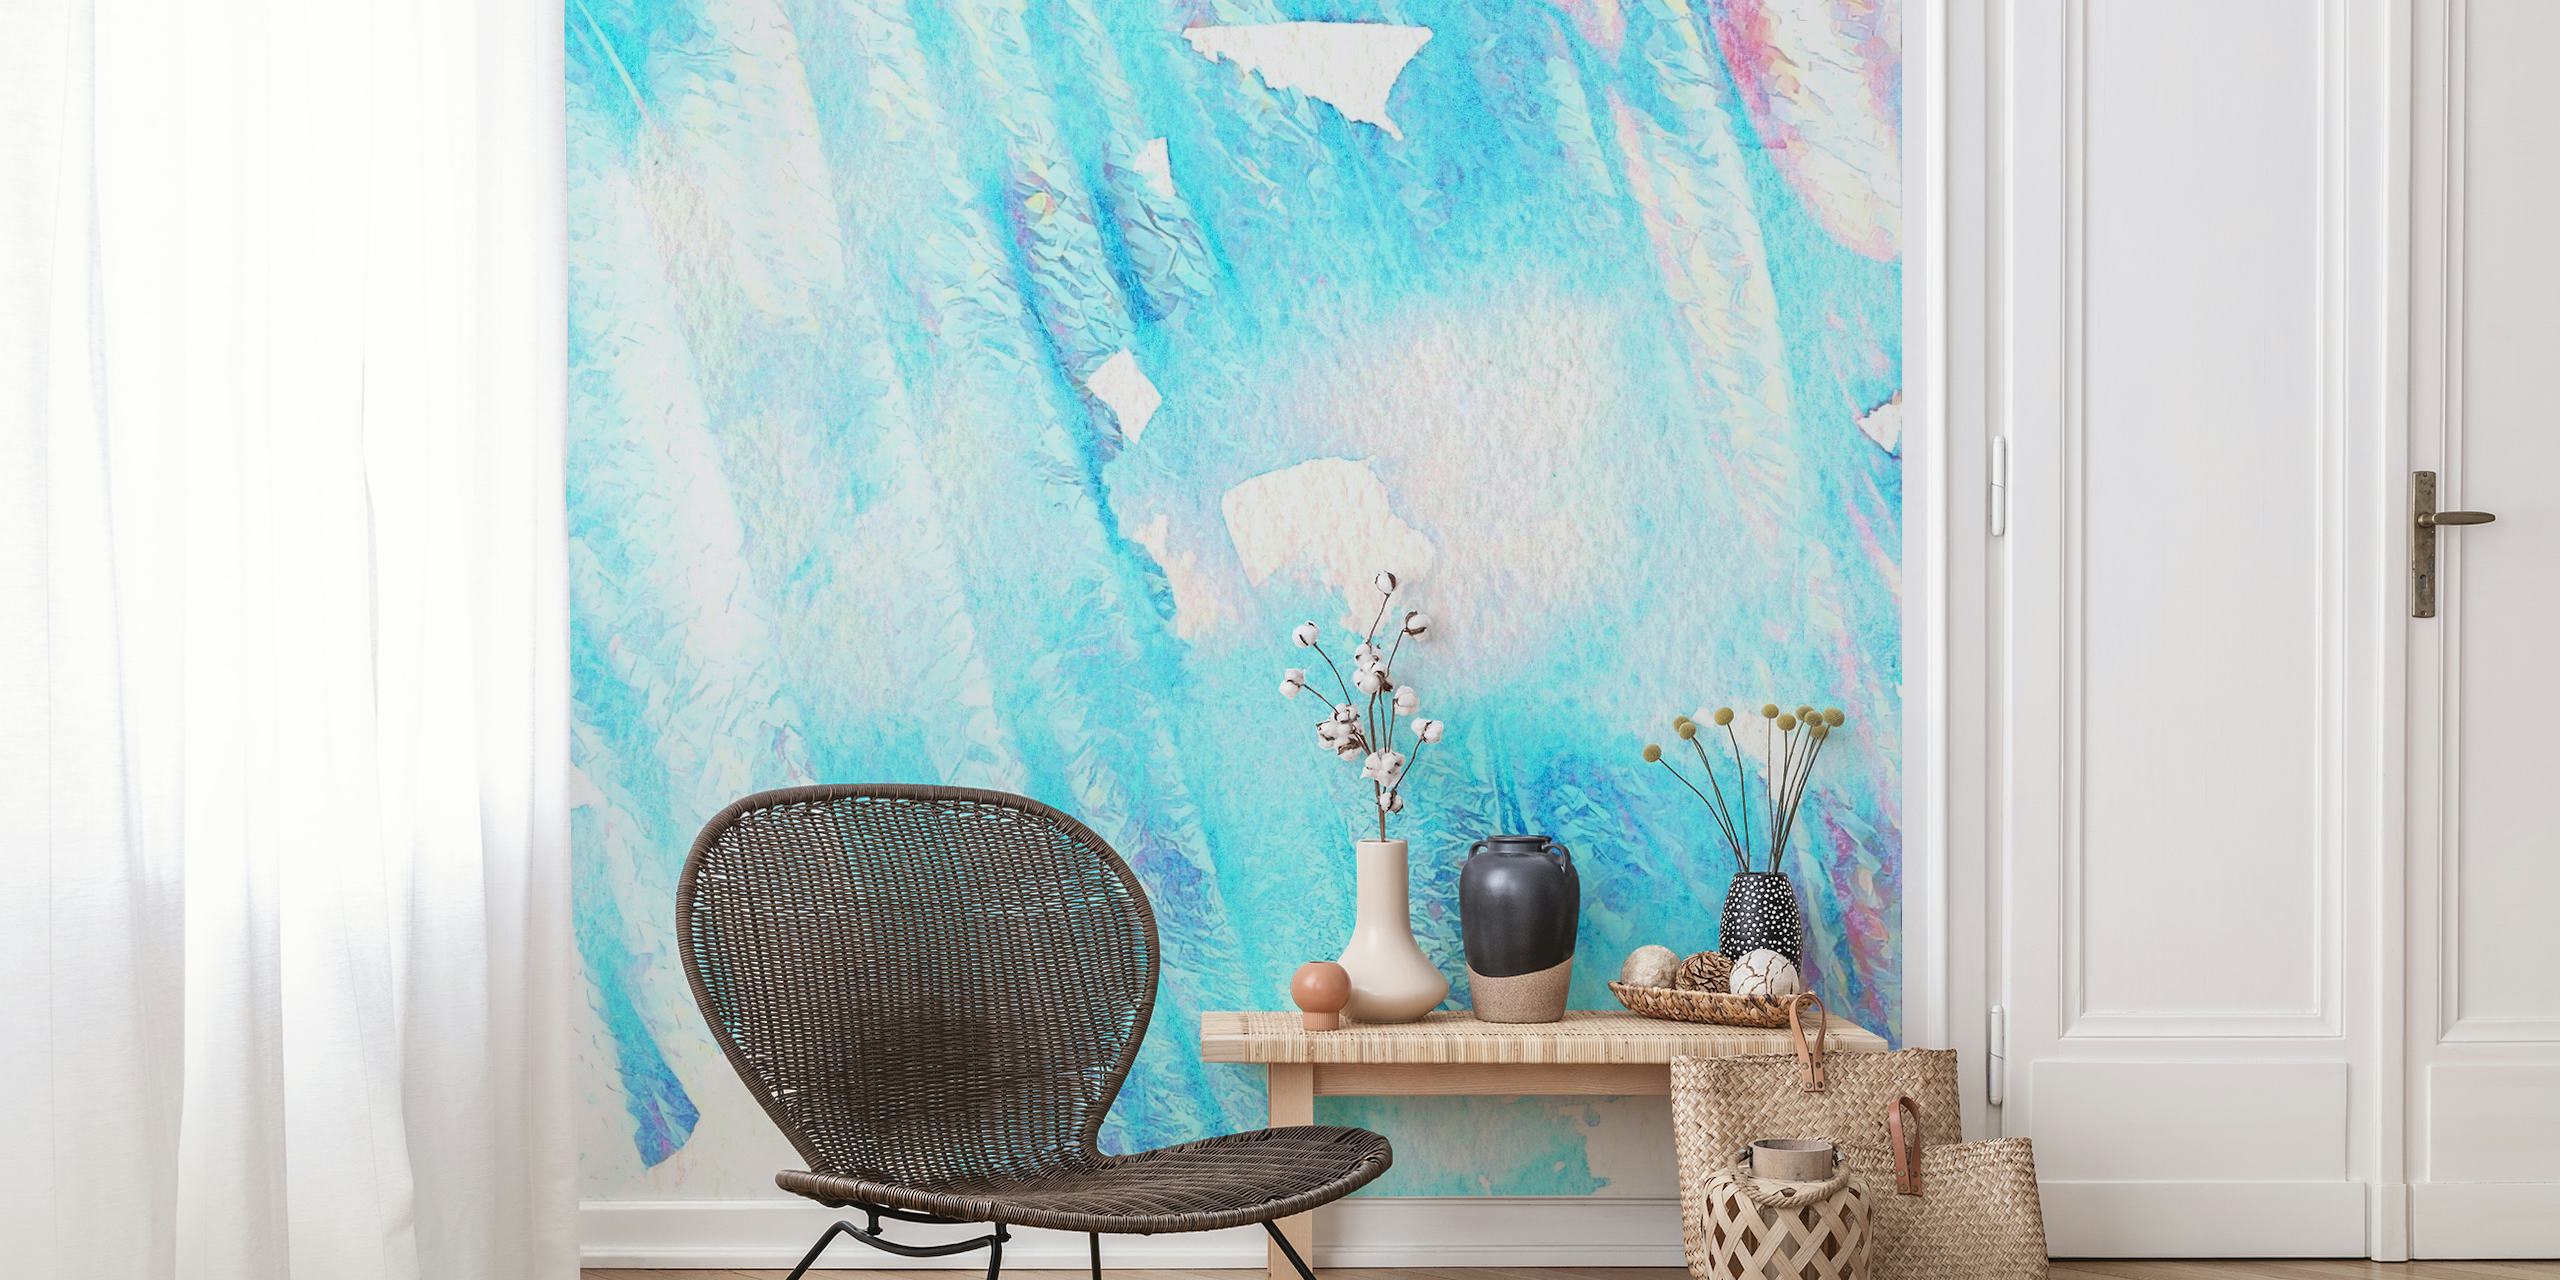 fotomural vinílico de parede com textura azul-petróleo claro e aquarela branca